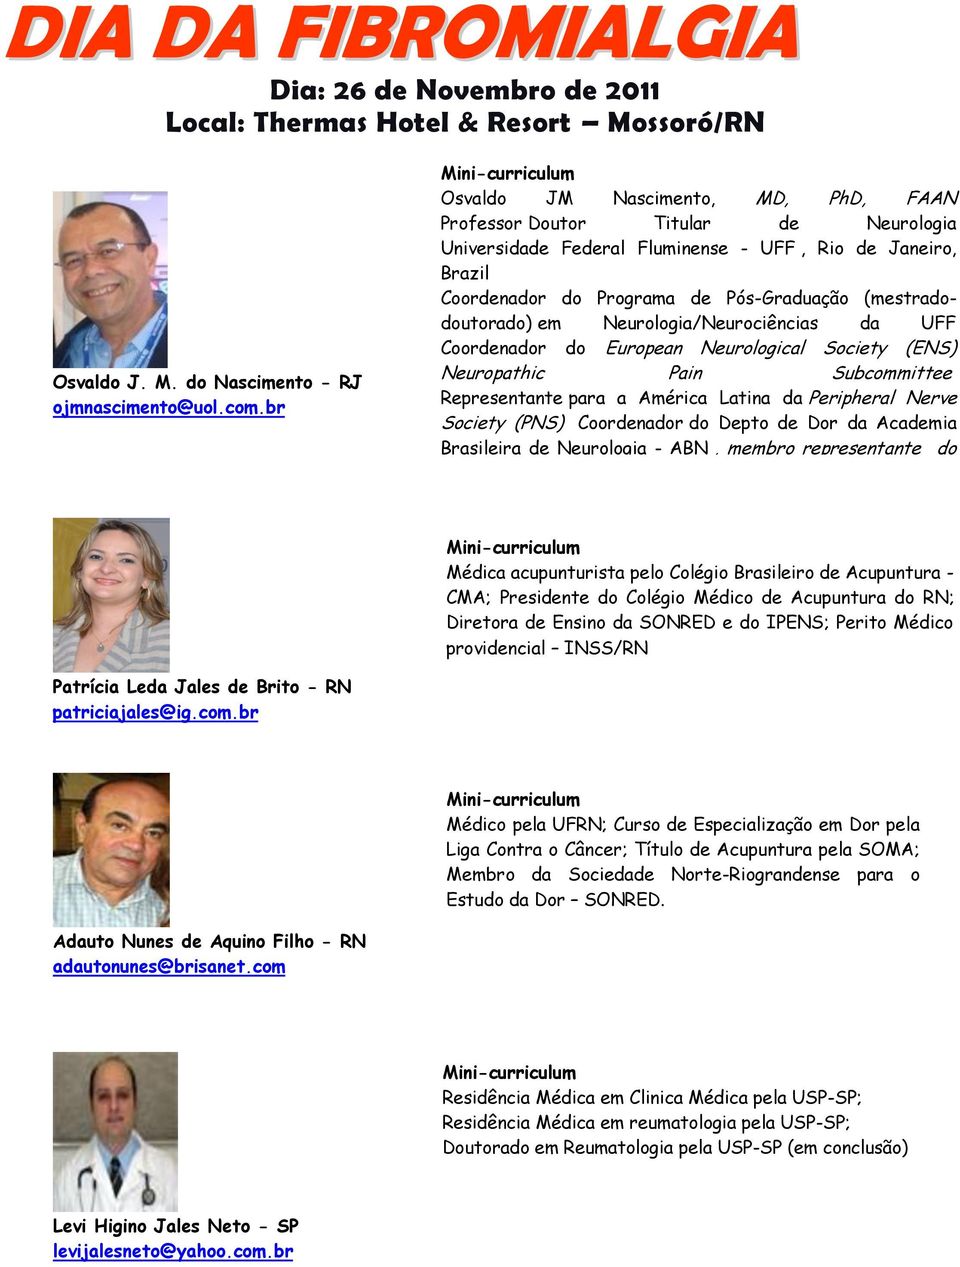 (mestradodoutorado) em Neurologia/Neurociências da UFF Coordenador do European Neurological Society (ENS) Neuropathic Pain Subcommittee Representante para a América Latina da Peripheral Nerve Society